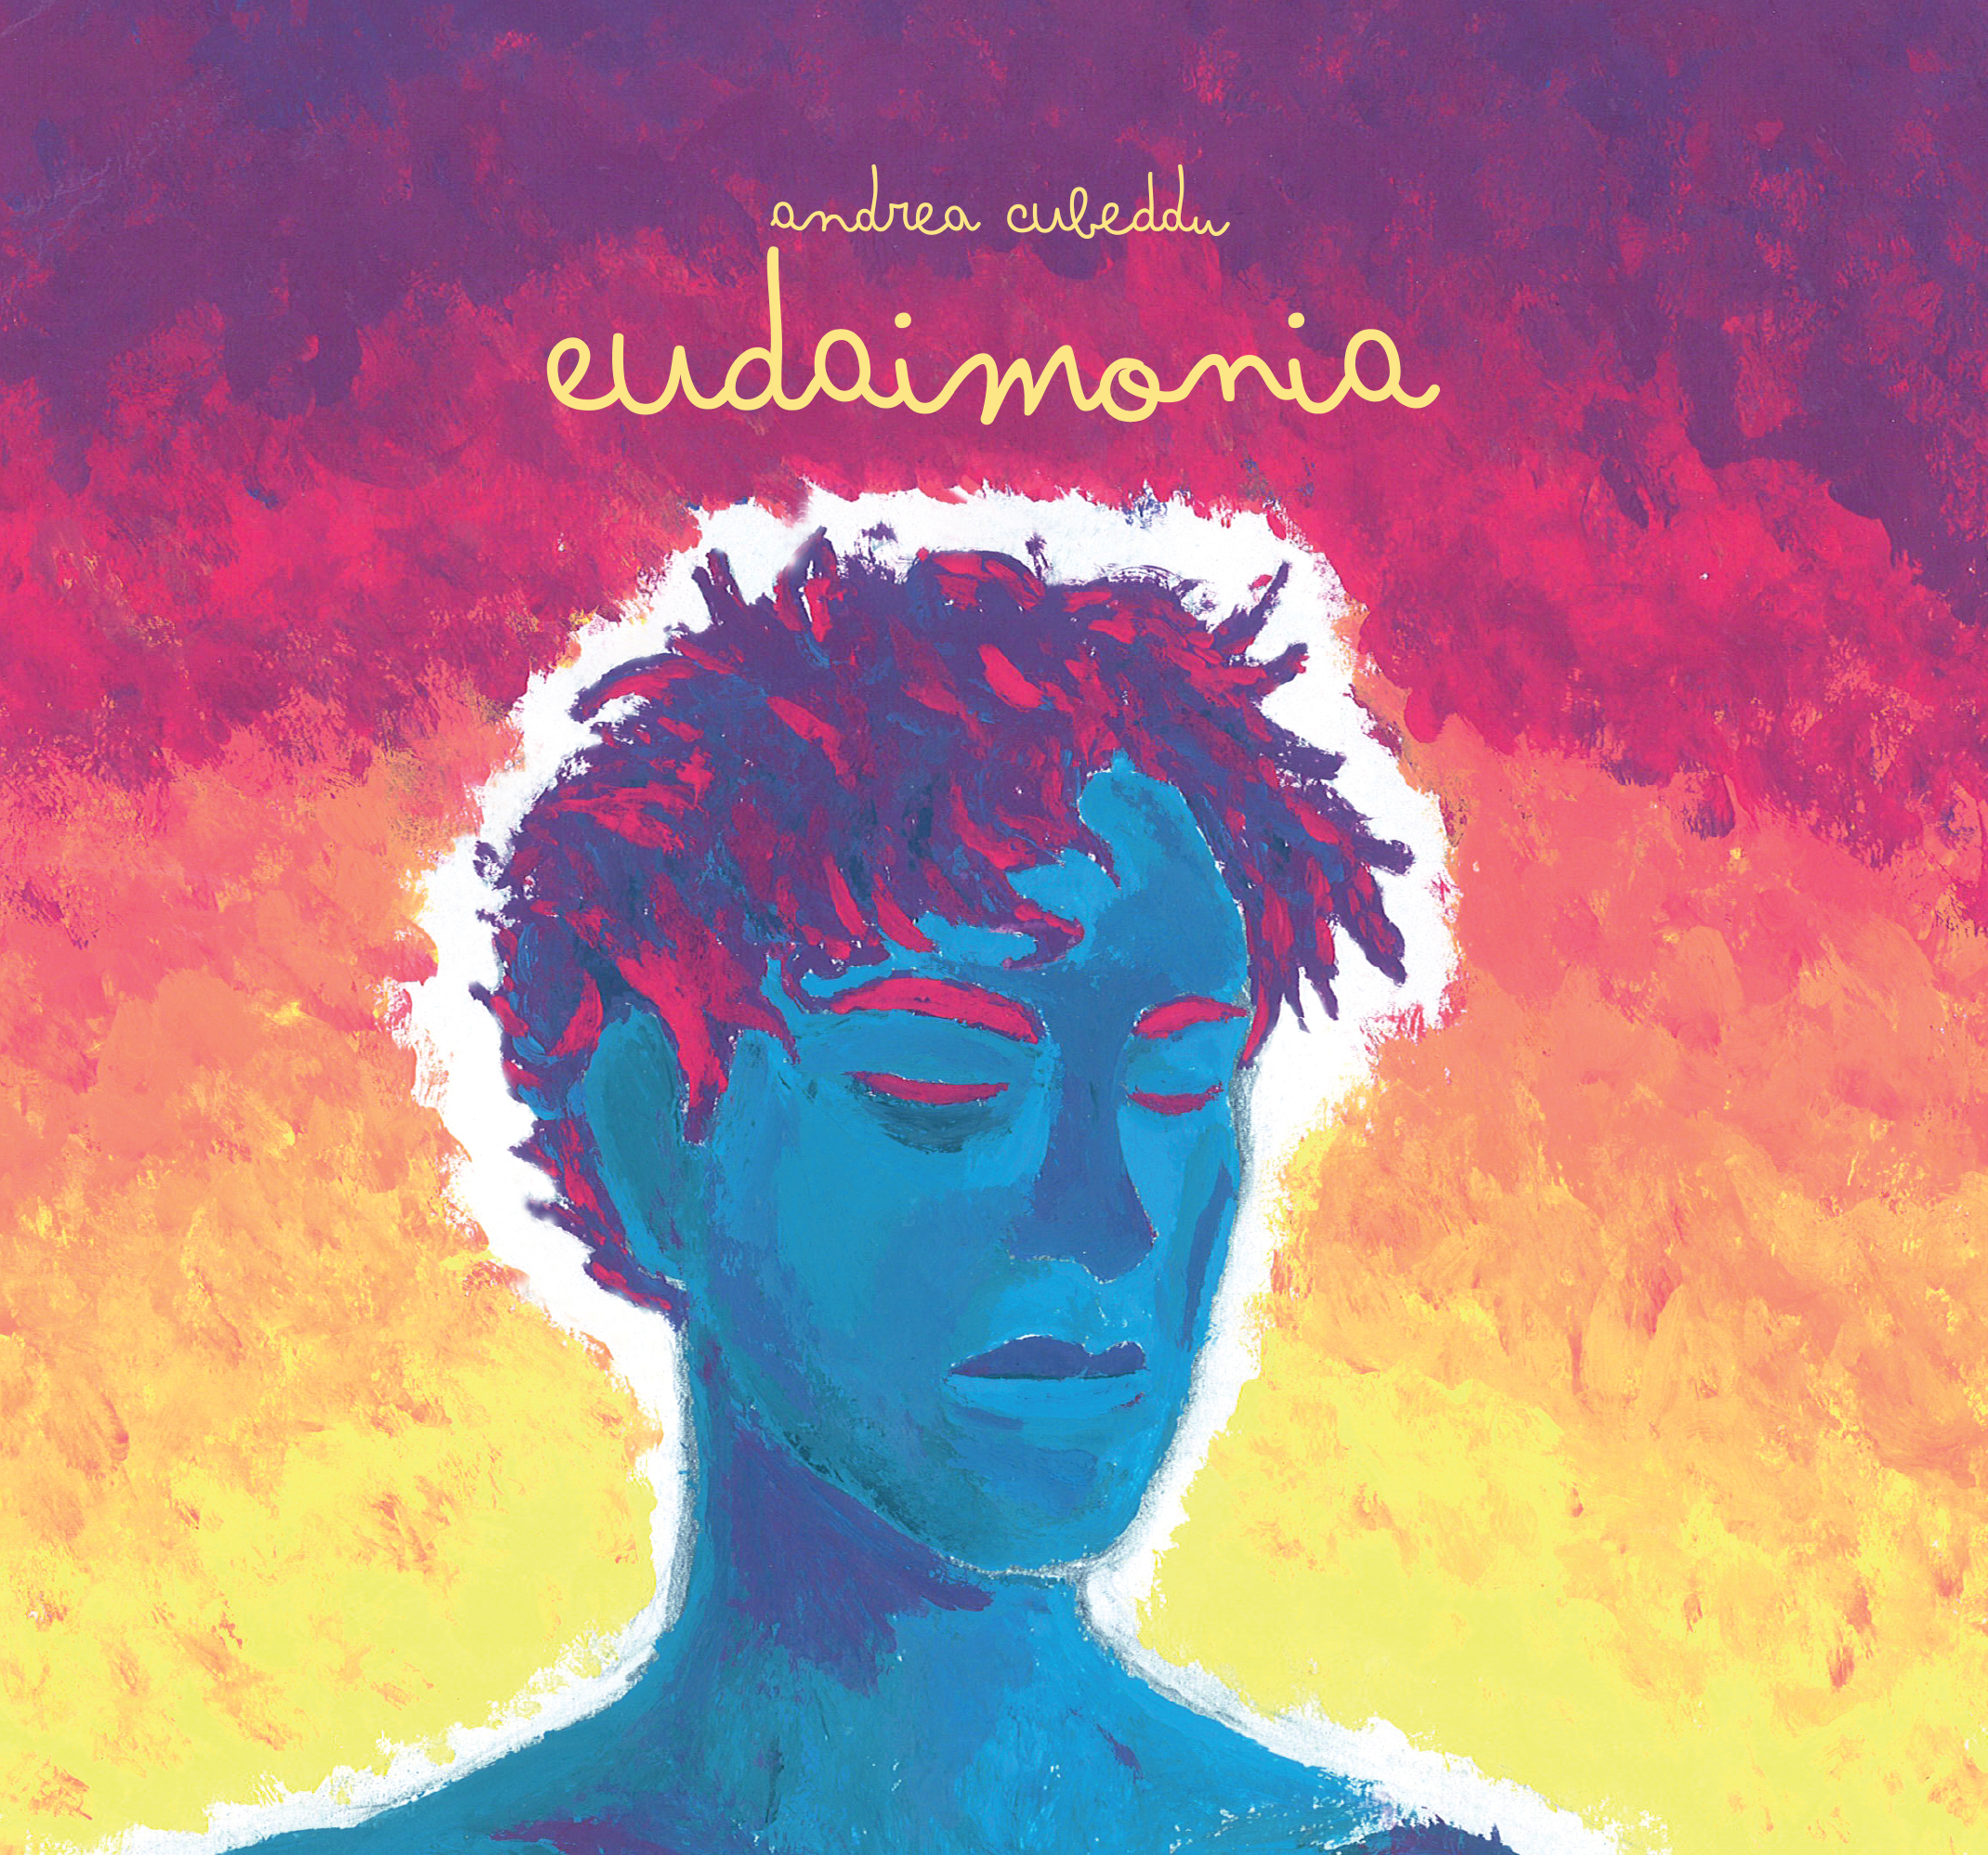 Andrea Cubeddu, il nuovo album “Eudaimonia” è un viaggio da vivere intensamente